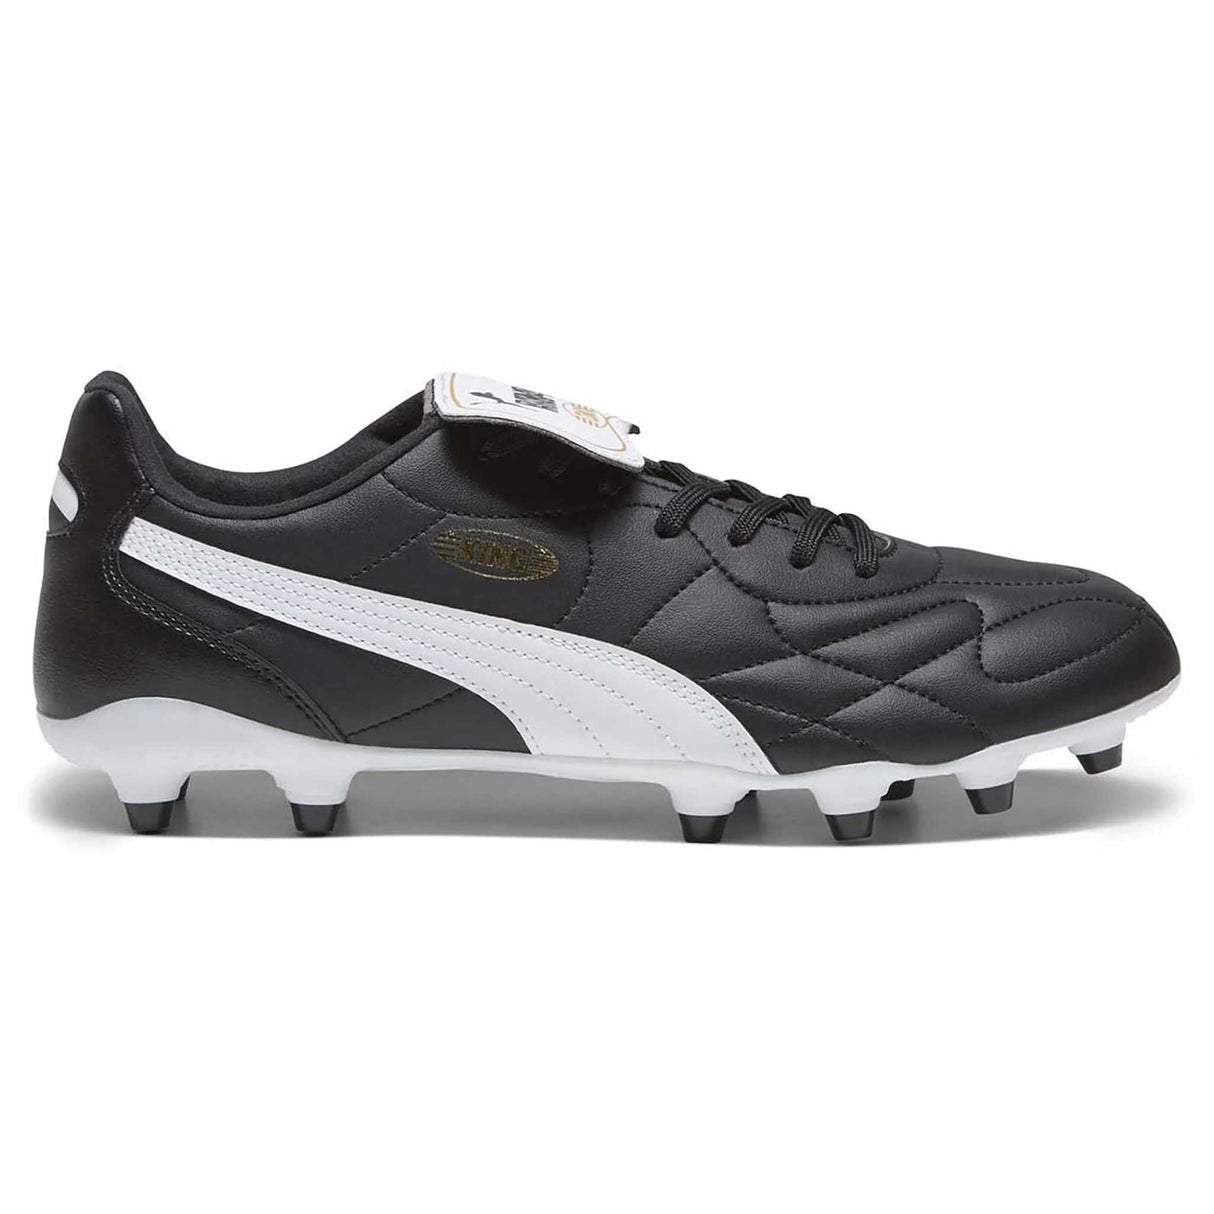 Puma King Top FG/AG souliers de soccer à crampons pour adultes - noir / blanc